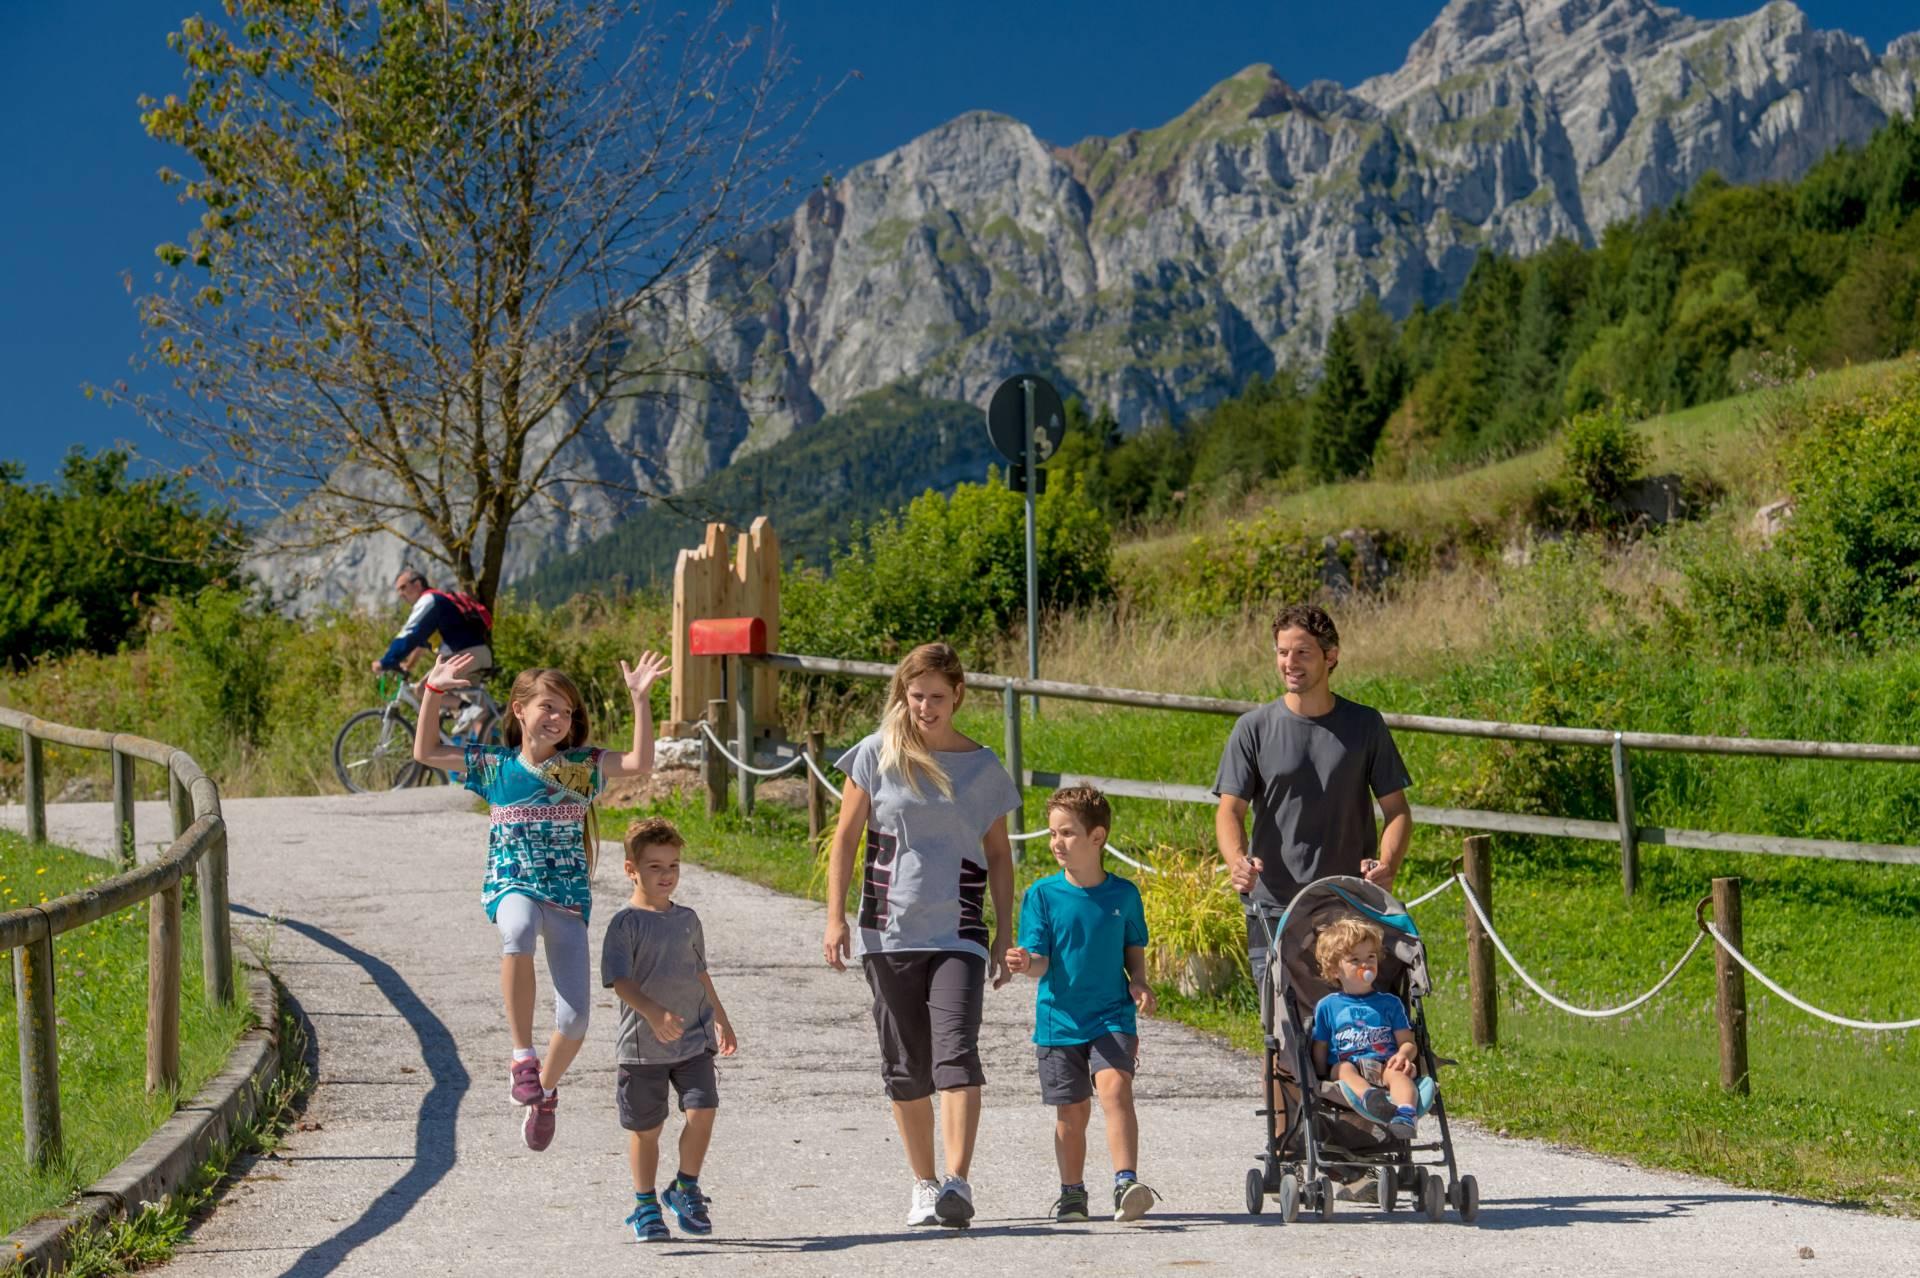 2016 PHMatteoDeStefano_Andalo_montagna_family_passeggiate_passeggini_lago_parco_Life_Dolomiti_Paganella_Trentino_(5)